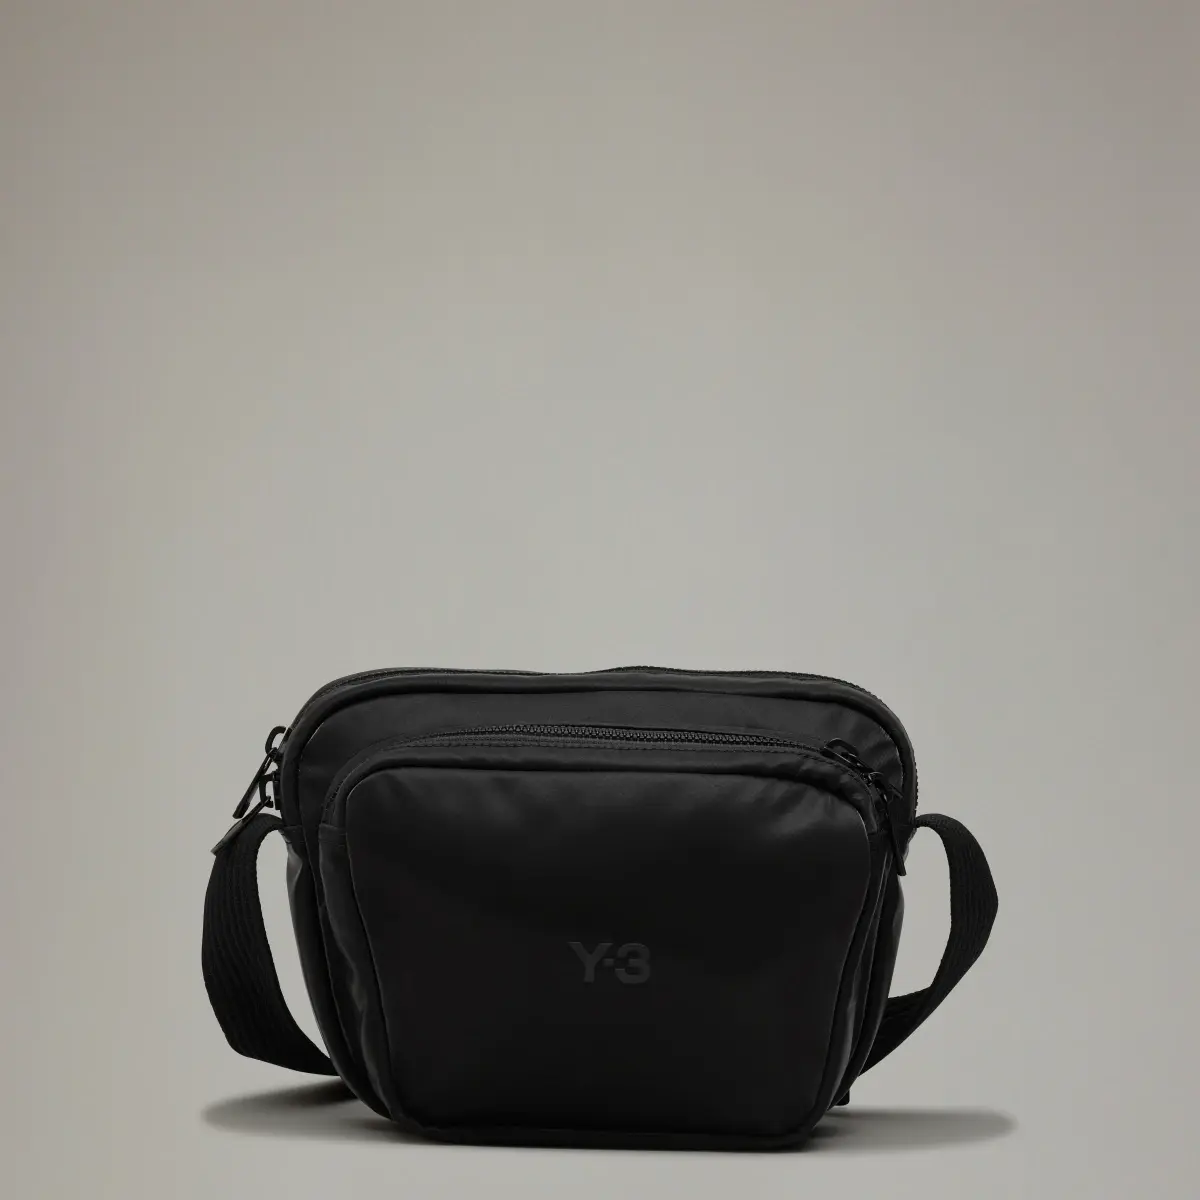 Adidas Y-3 Crossbody Bag. 1